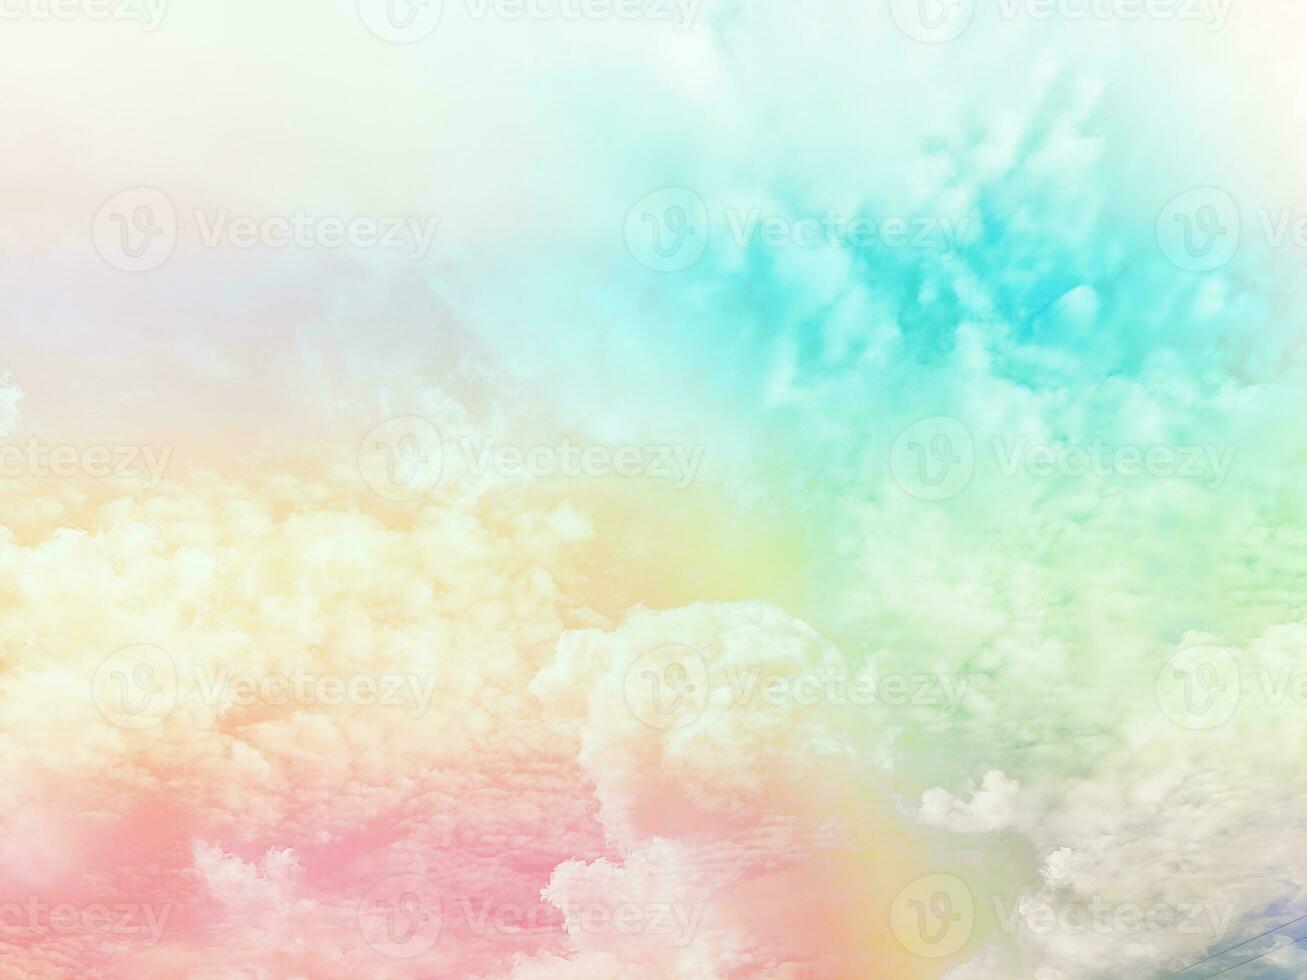 schönheit süß pastellgrün blau bunt mit flauschigen wolken am himmel. mehrfarbiges Regenbogenbild. abstrakte Fantasie wachsendes Licht foto